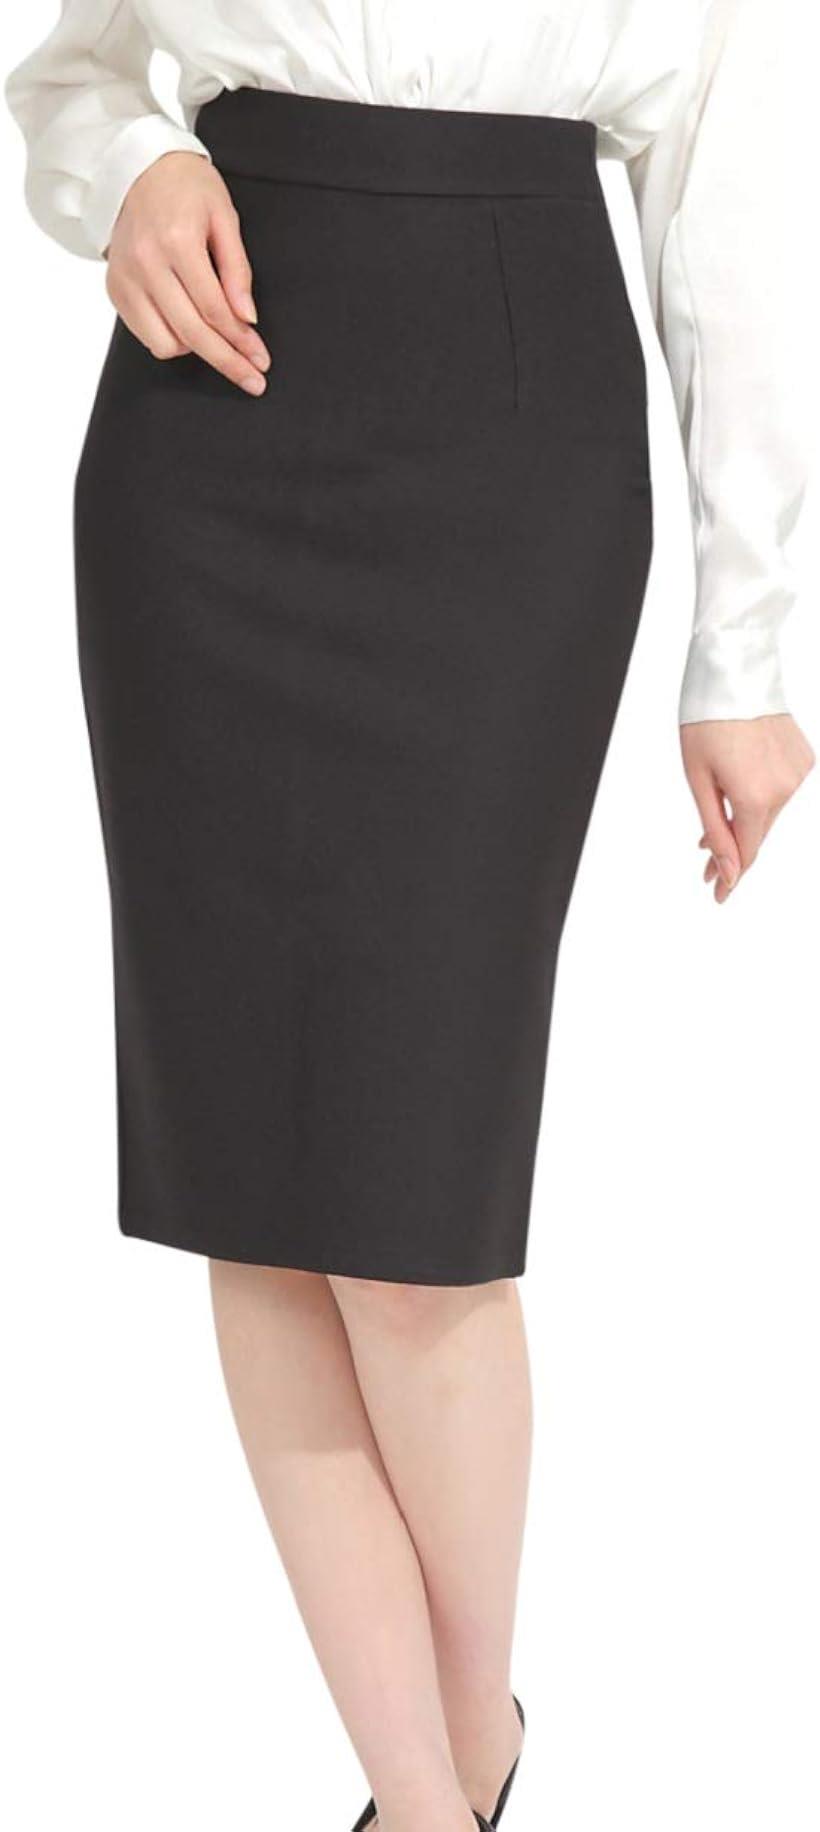 ペンシル スカート タイト 大きいサイズ ひざ下 ミディ丈 オフィス スーツ 用 バックスリット e543( ブラック, M)